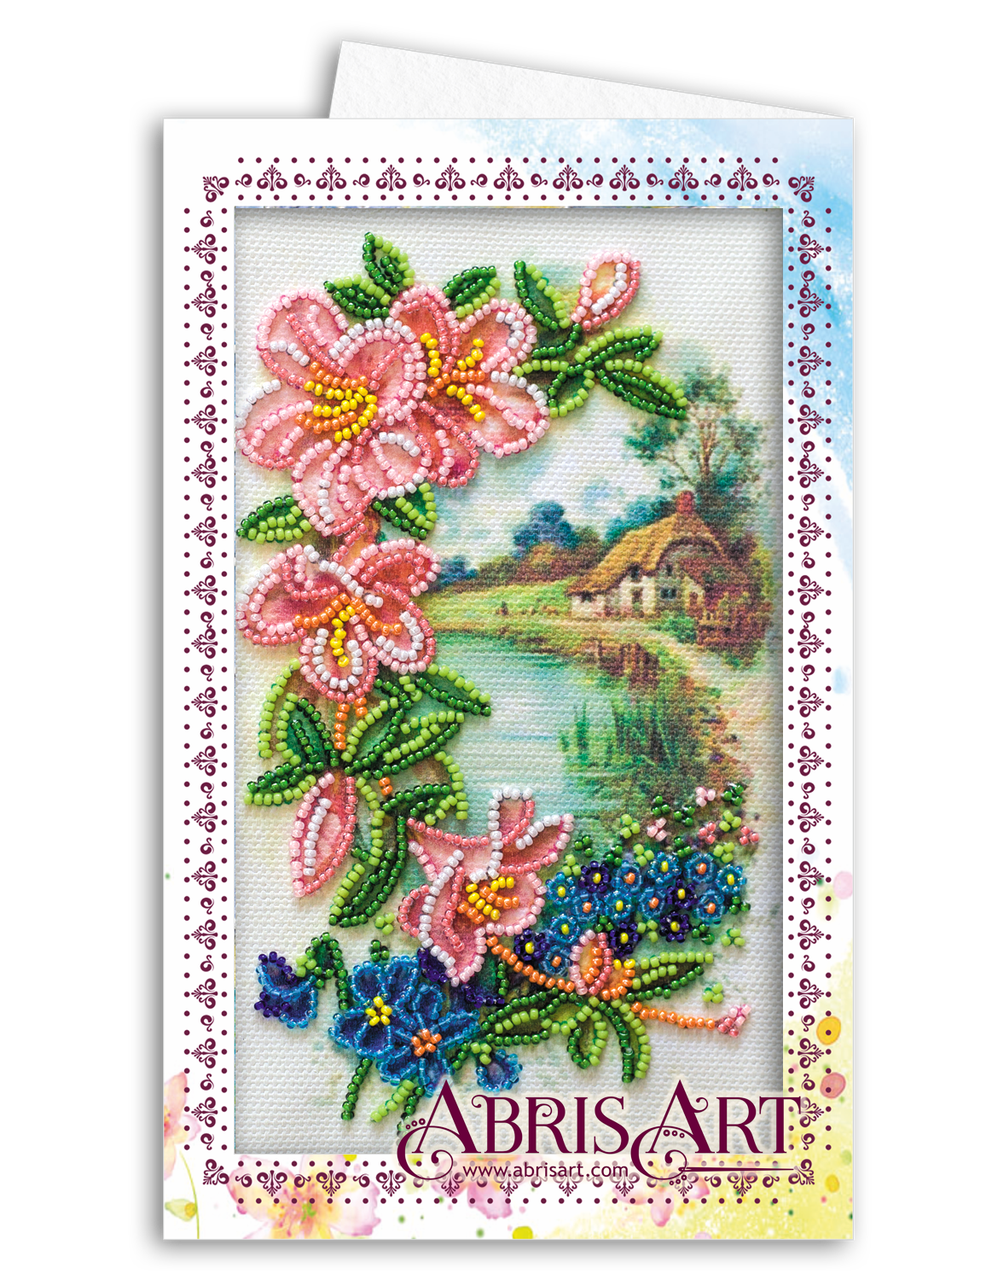 

Набор для вышивания бисером открытка-конверт Абрис Арт Прованс AOM-010